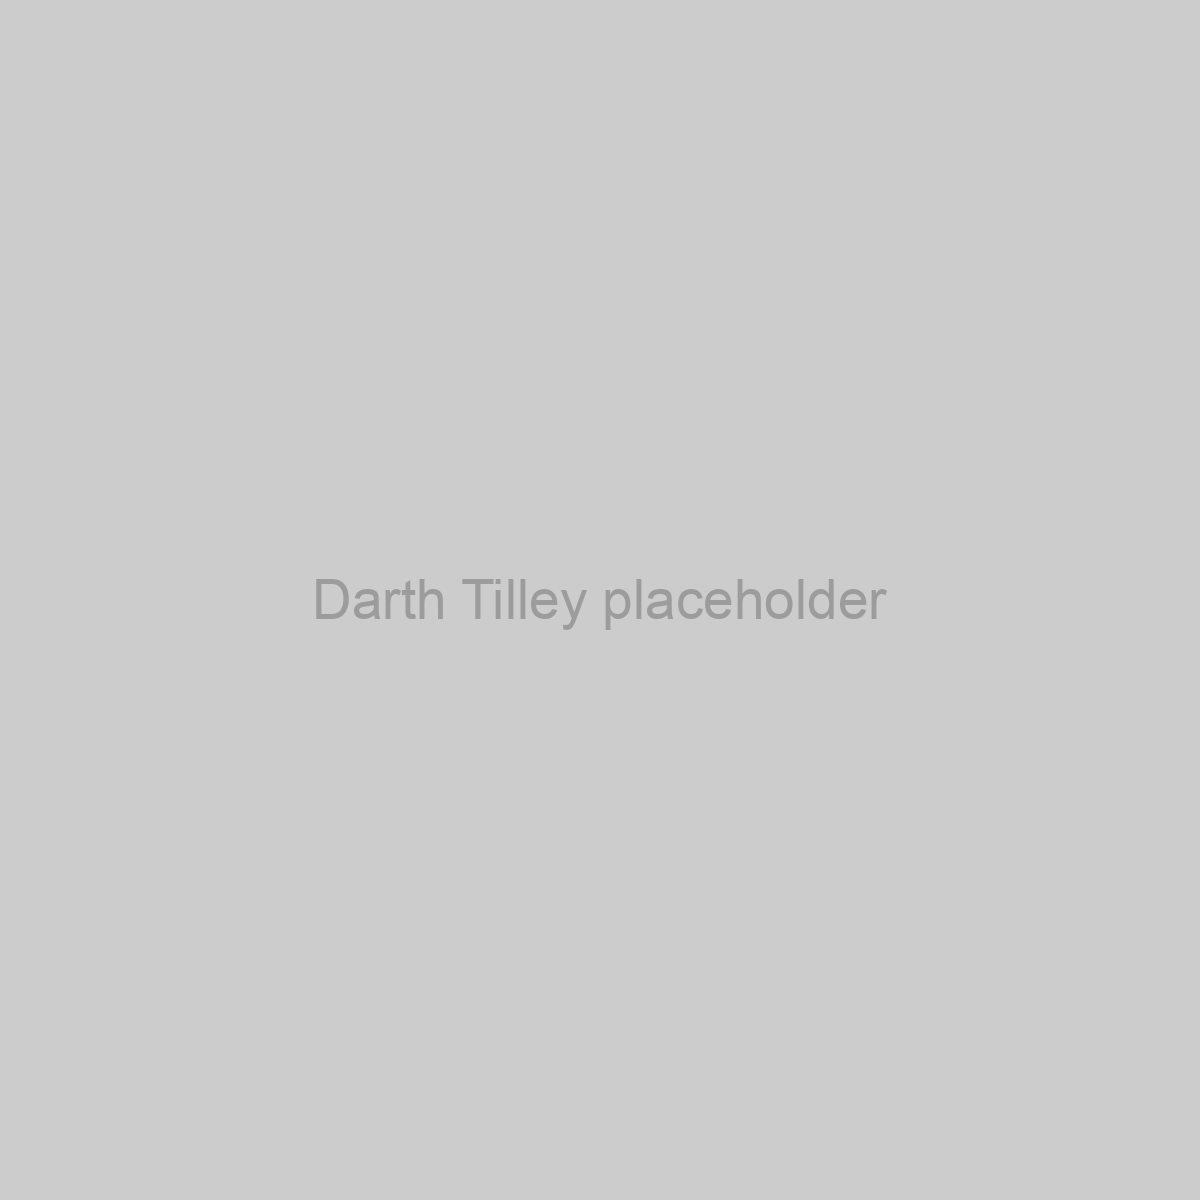 Darth Tilley Placeholder Image